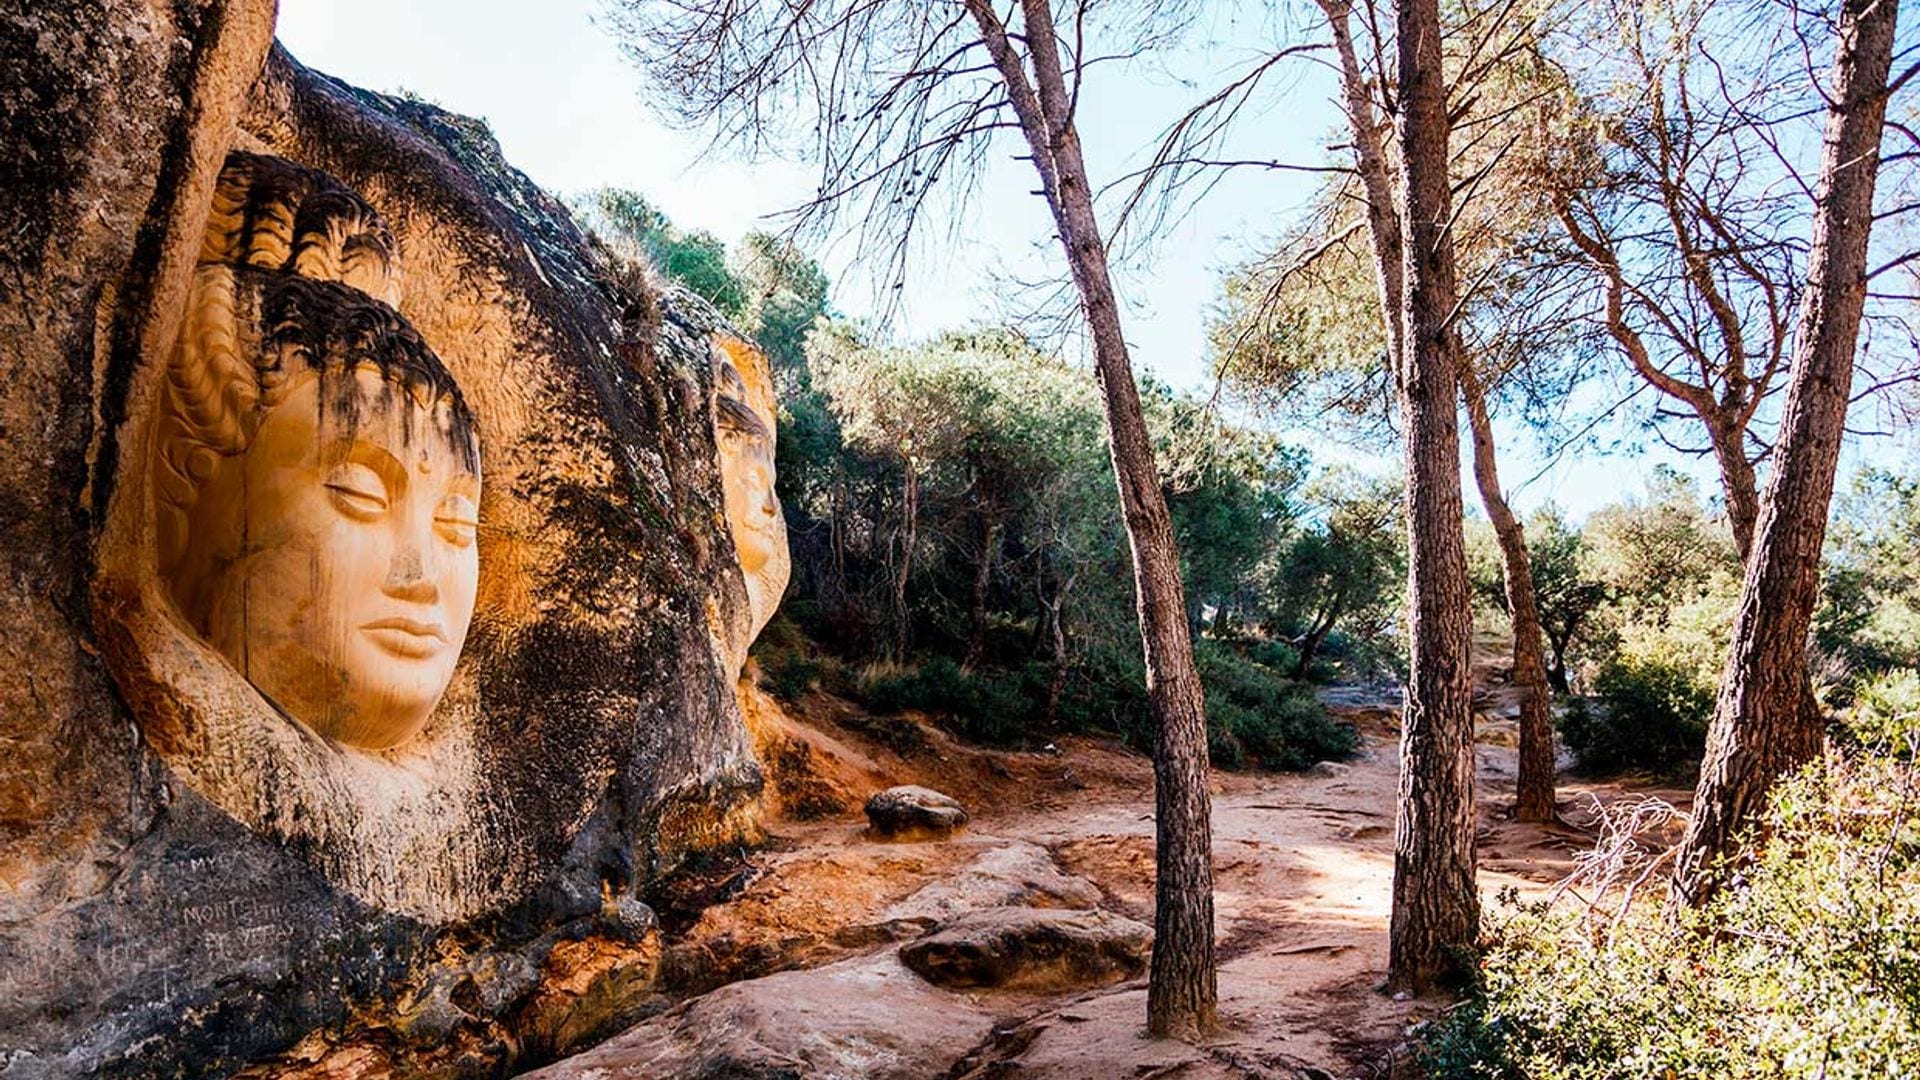 Ruta de las Caras, las esculturas ocultas en la naturaleza de Cuenca